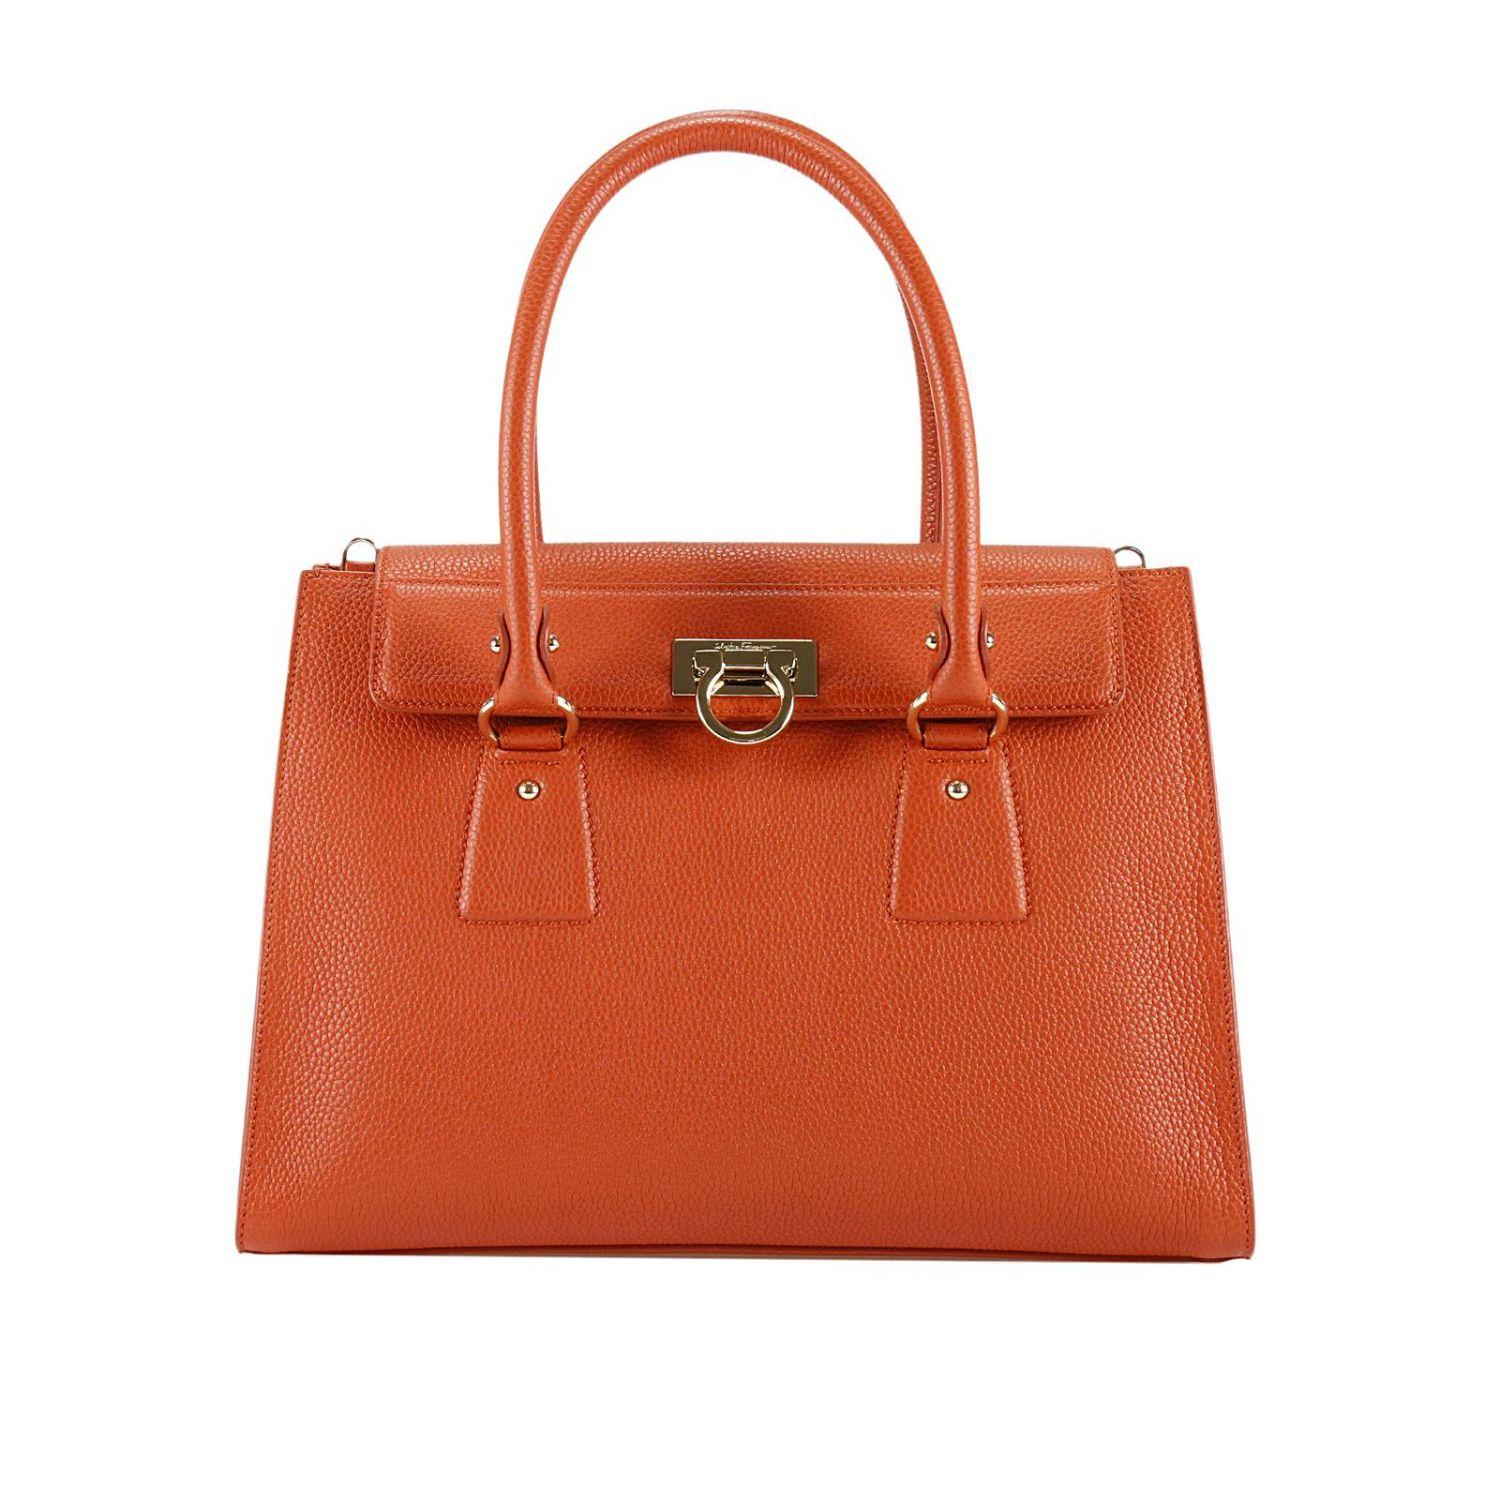 Lyst - Ferragamo Handbag Women in Orange